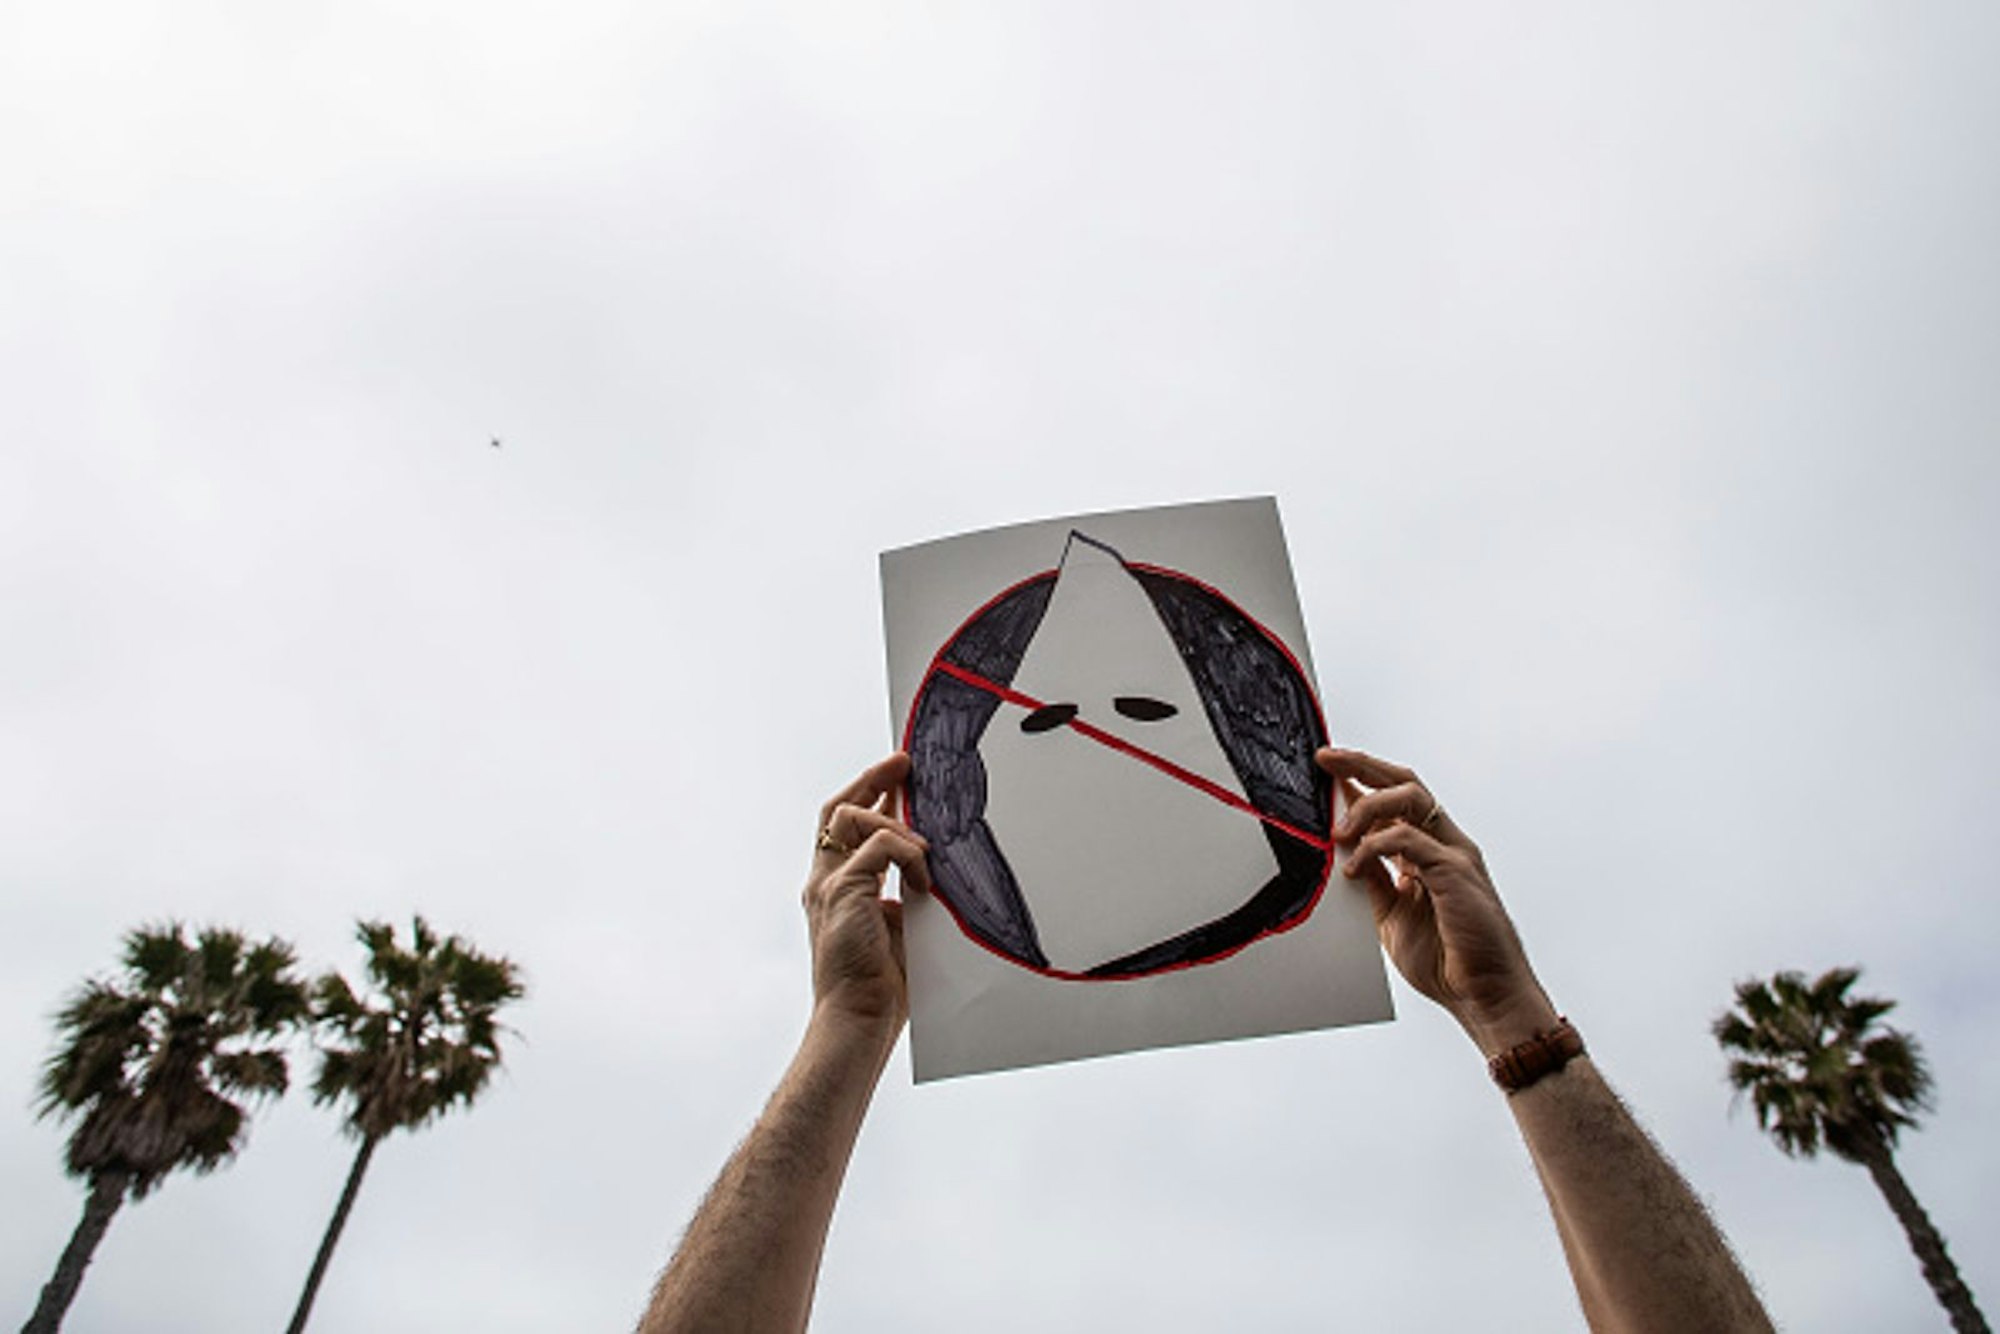 Ein Antirassist hält im April 2021 in Huntington Beach, Kalifornien, ein Plakat gegen den Ku-Klux-Klan und dessen „White Supremacy“ in die Höhe. Ku-Klux-Klan-nahe Gruppen hatten zuvor Flugblätter verteilt. (Bild: 2021 Getty Images / Apu Gomes)